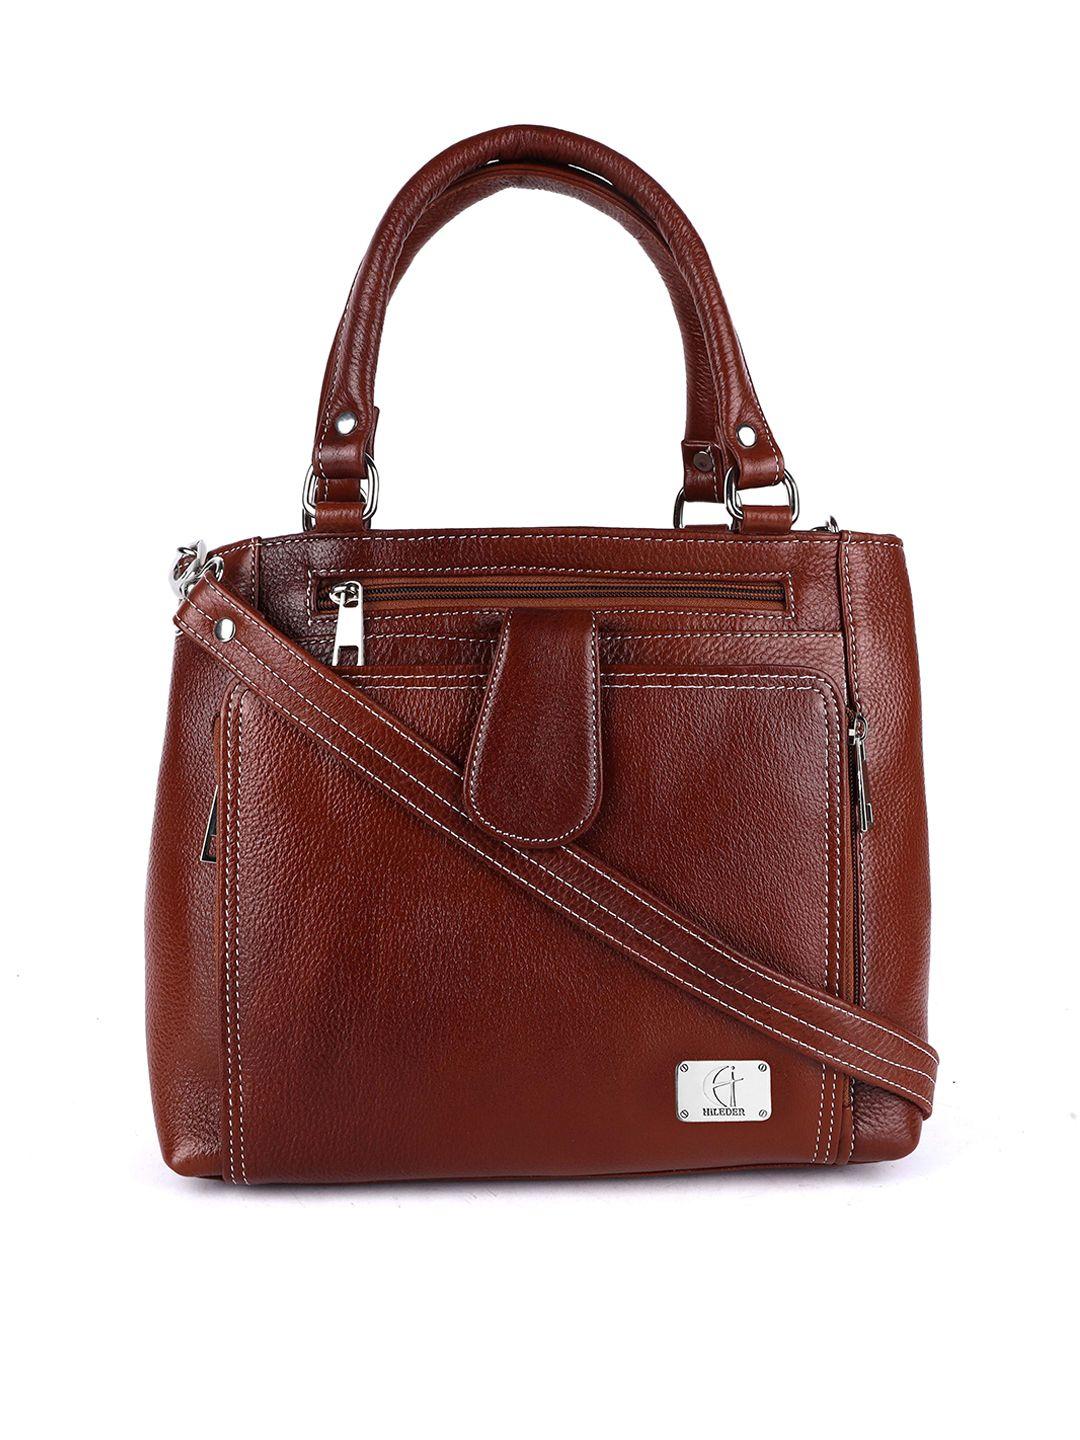 hileder brown leather structured handheld bag